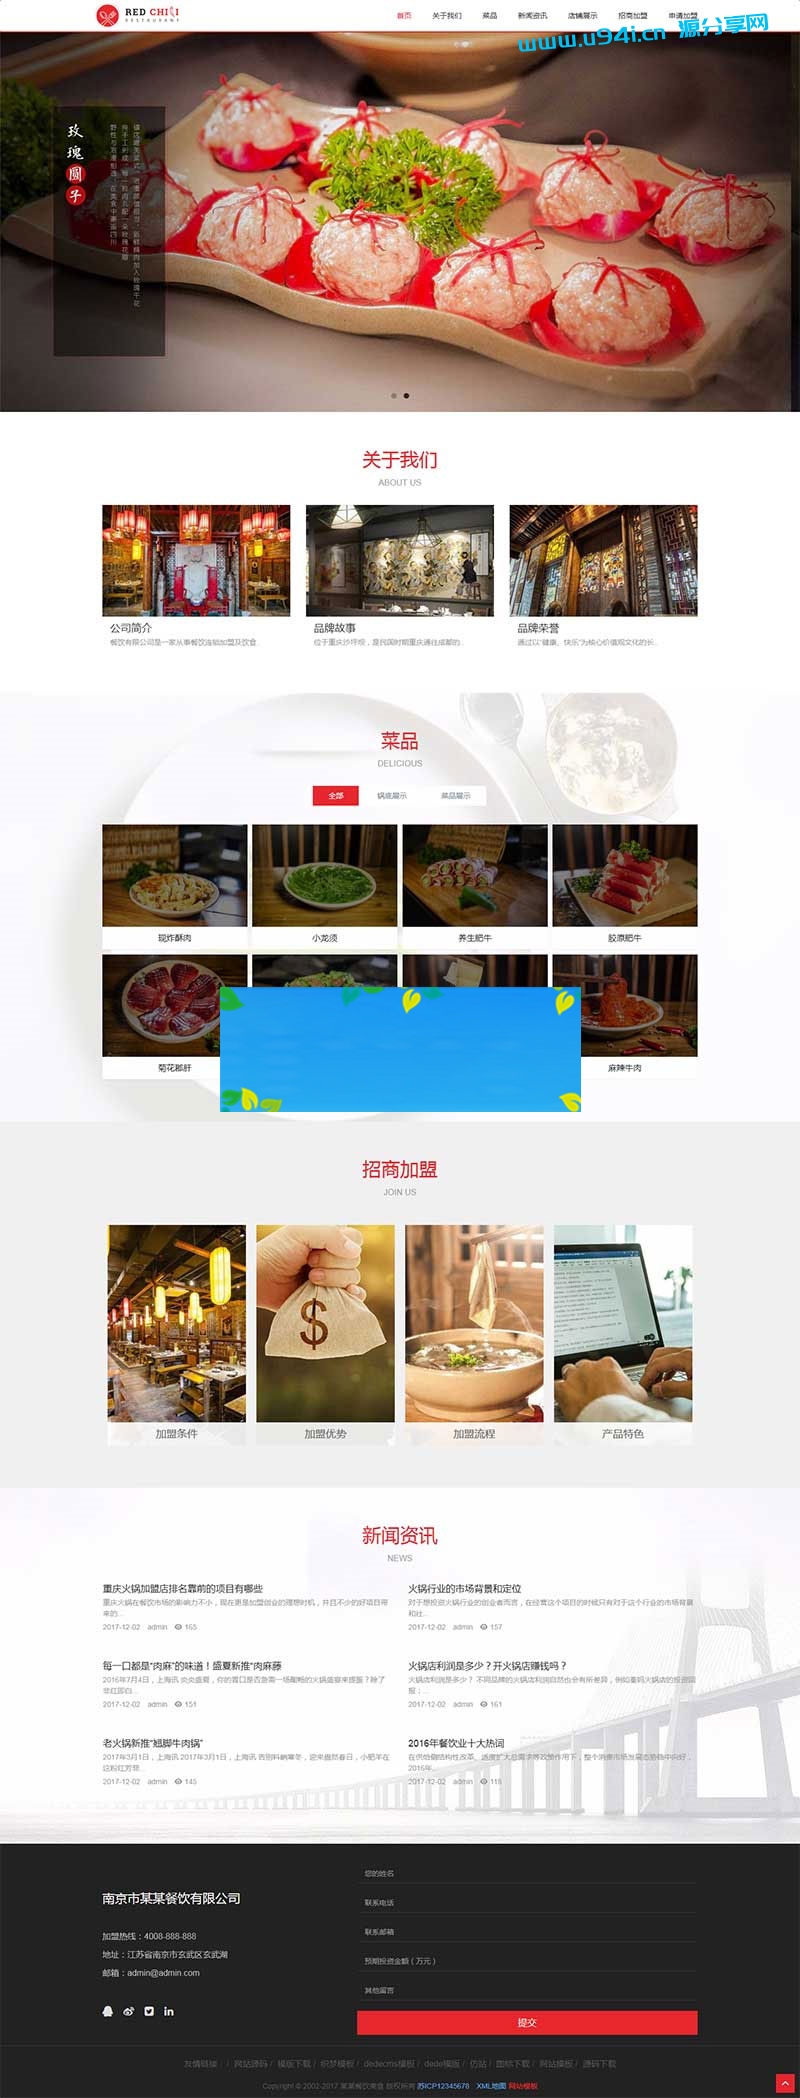 织梦dedecms响应式餐饮美食加盟企业网站模板(自适应手机移动端)